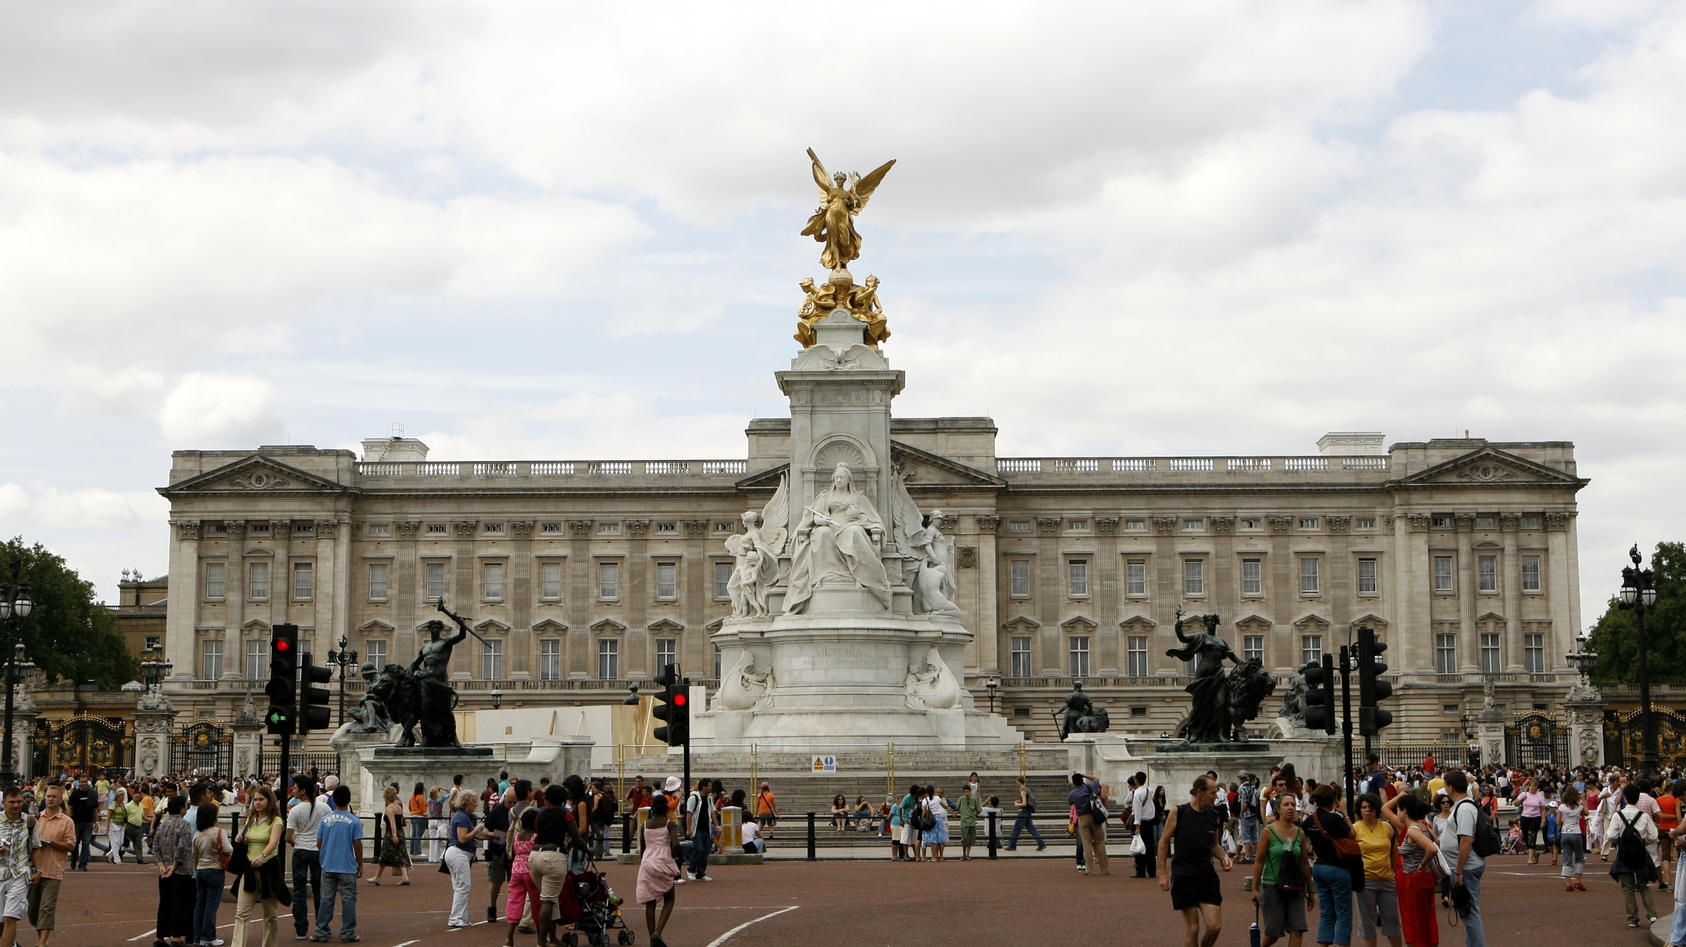 Blick auf das Queen Victoria Memorial (vorn) vor dem Buckingham-Palast, der offiziellen Residenz der englischen Königsfamilie nahe dem Saint James Park im Zentrum von London, aufgenommen am 06.08.2006. Der zu Beginn des 18. Jahrhunderts vom Duke of B